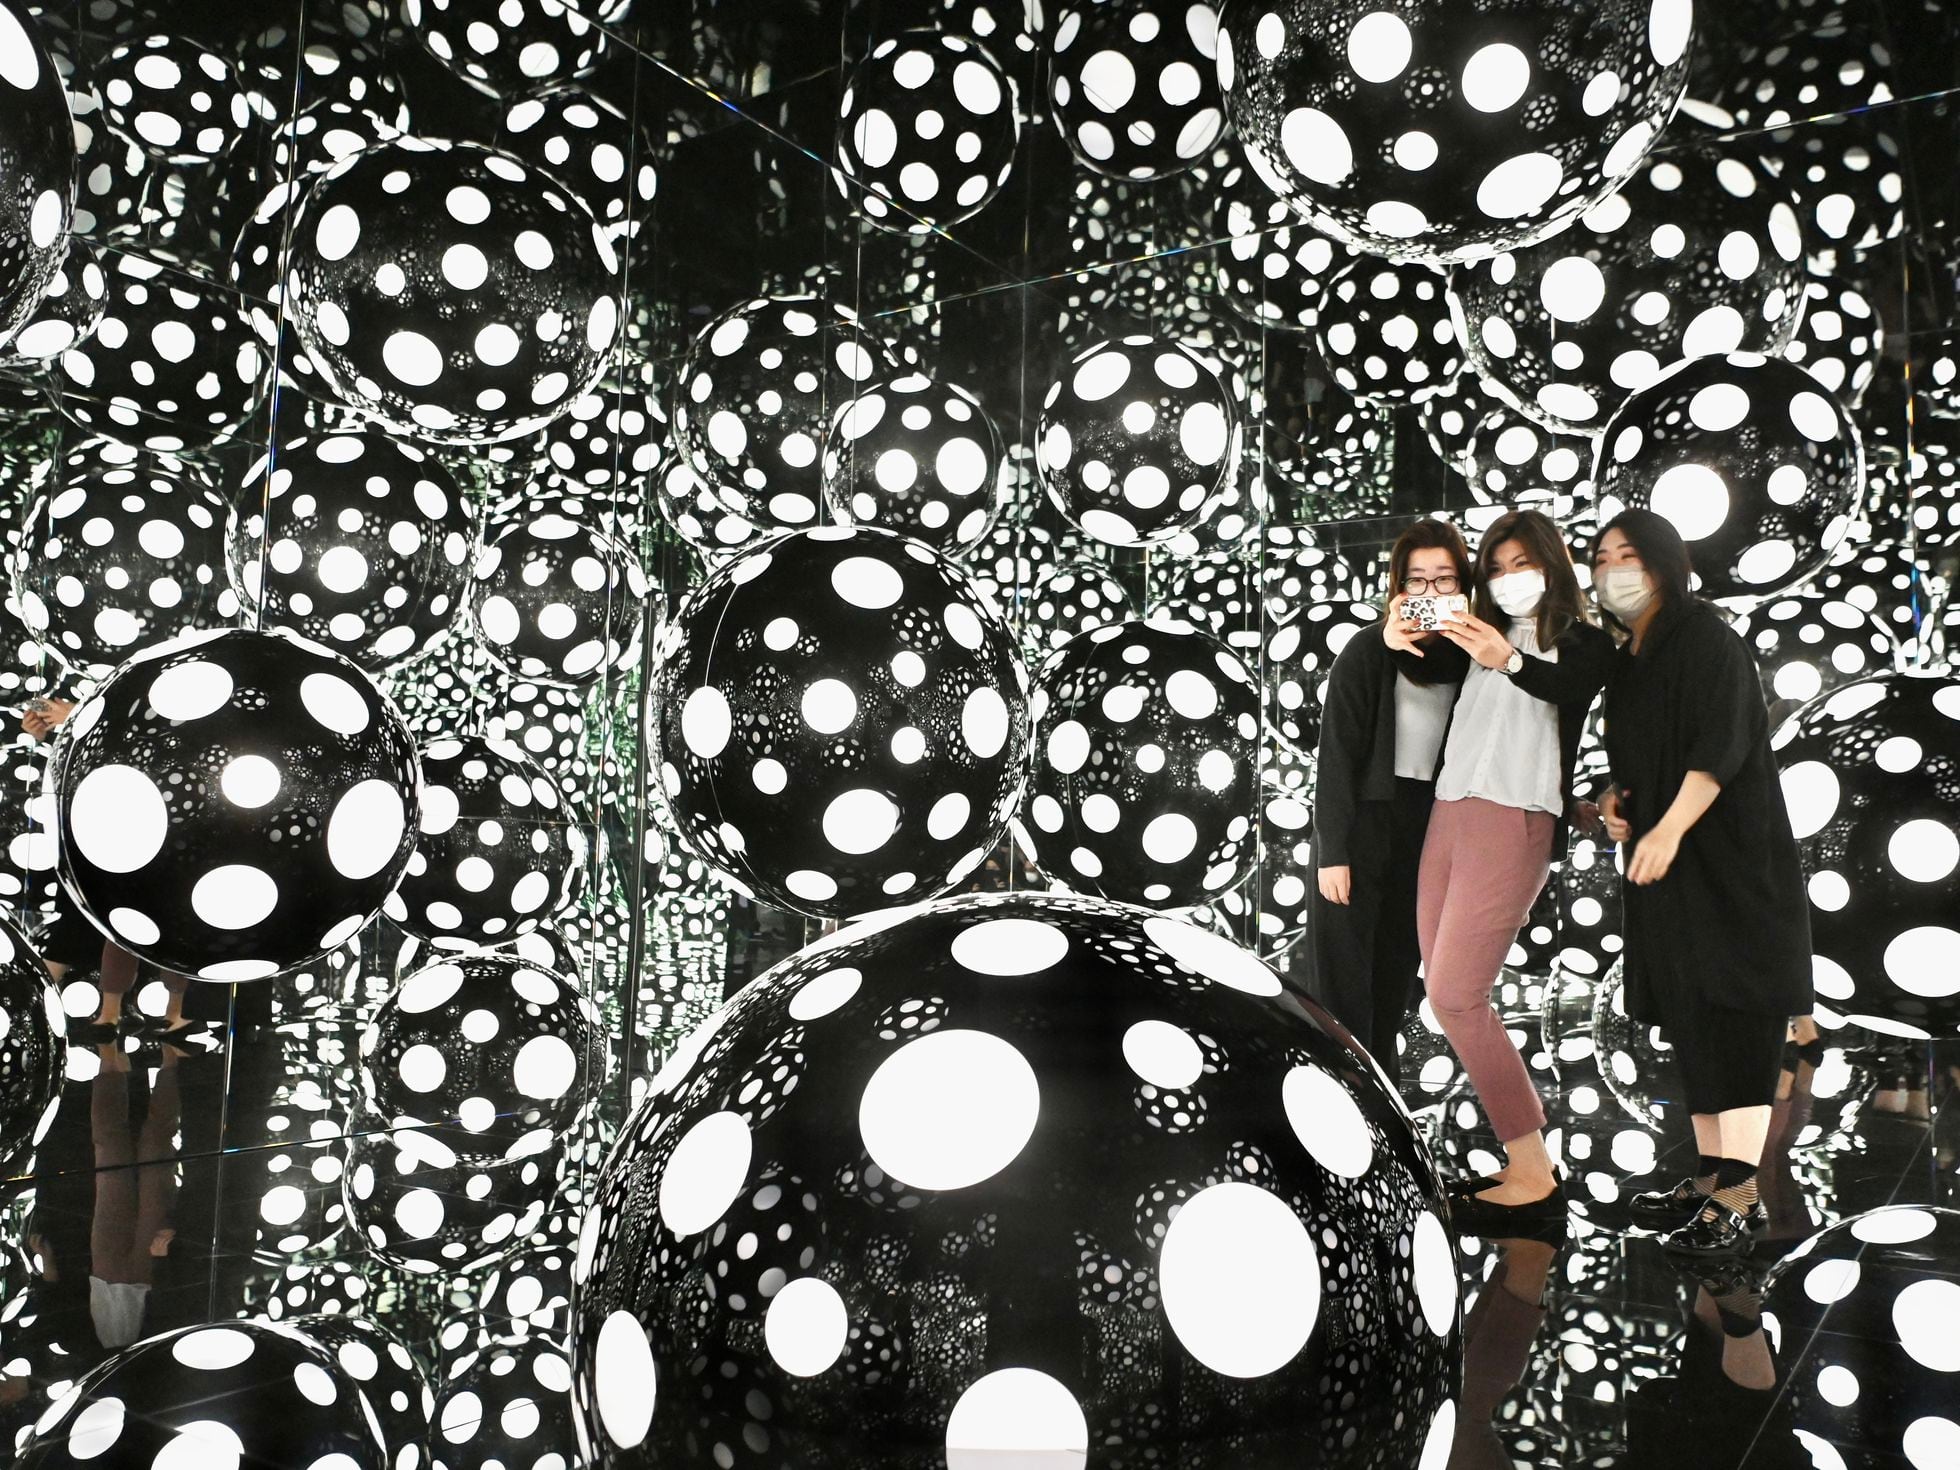 Inside Yayoi Kusama's polka-dot world